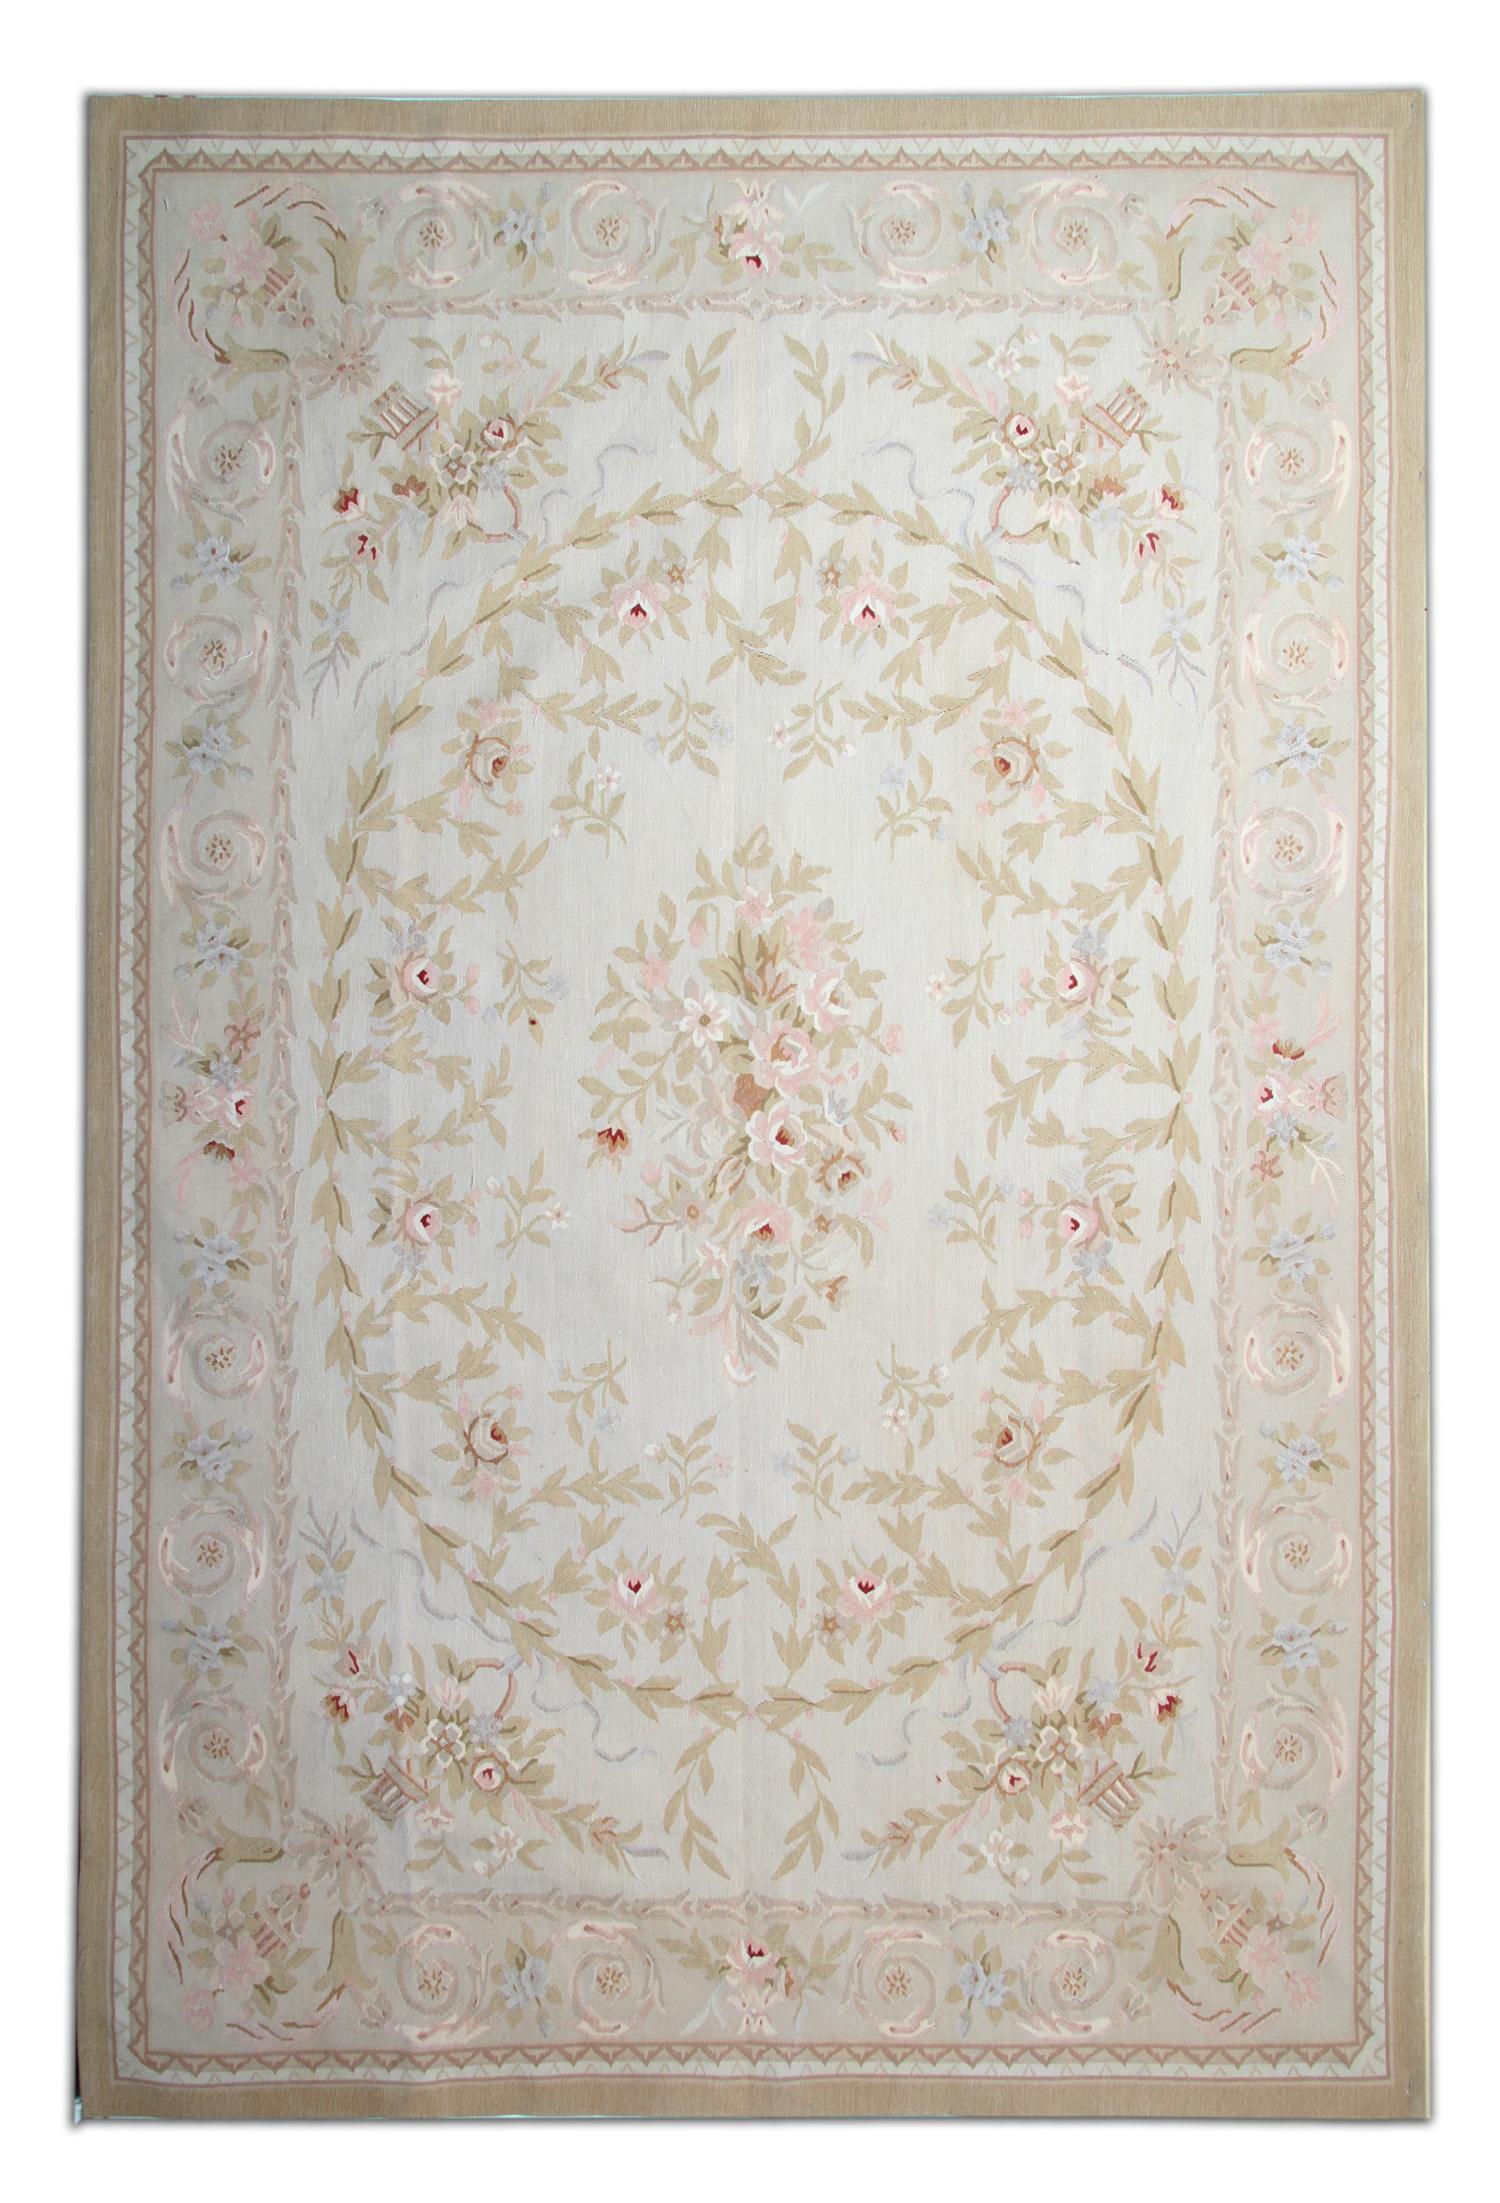 Dieser wunderschöne, handgewebte Aubusson-Teppich wird in jedem Raum, in den er gelegt wird, einen tollen Akzent setzen. Ein elfenbeinfarbenes Blau bildet den Hintergrund dieses eleganten Teppichs. Diese ist dann mit einem symmetrischen Blumenmuster